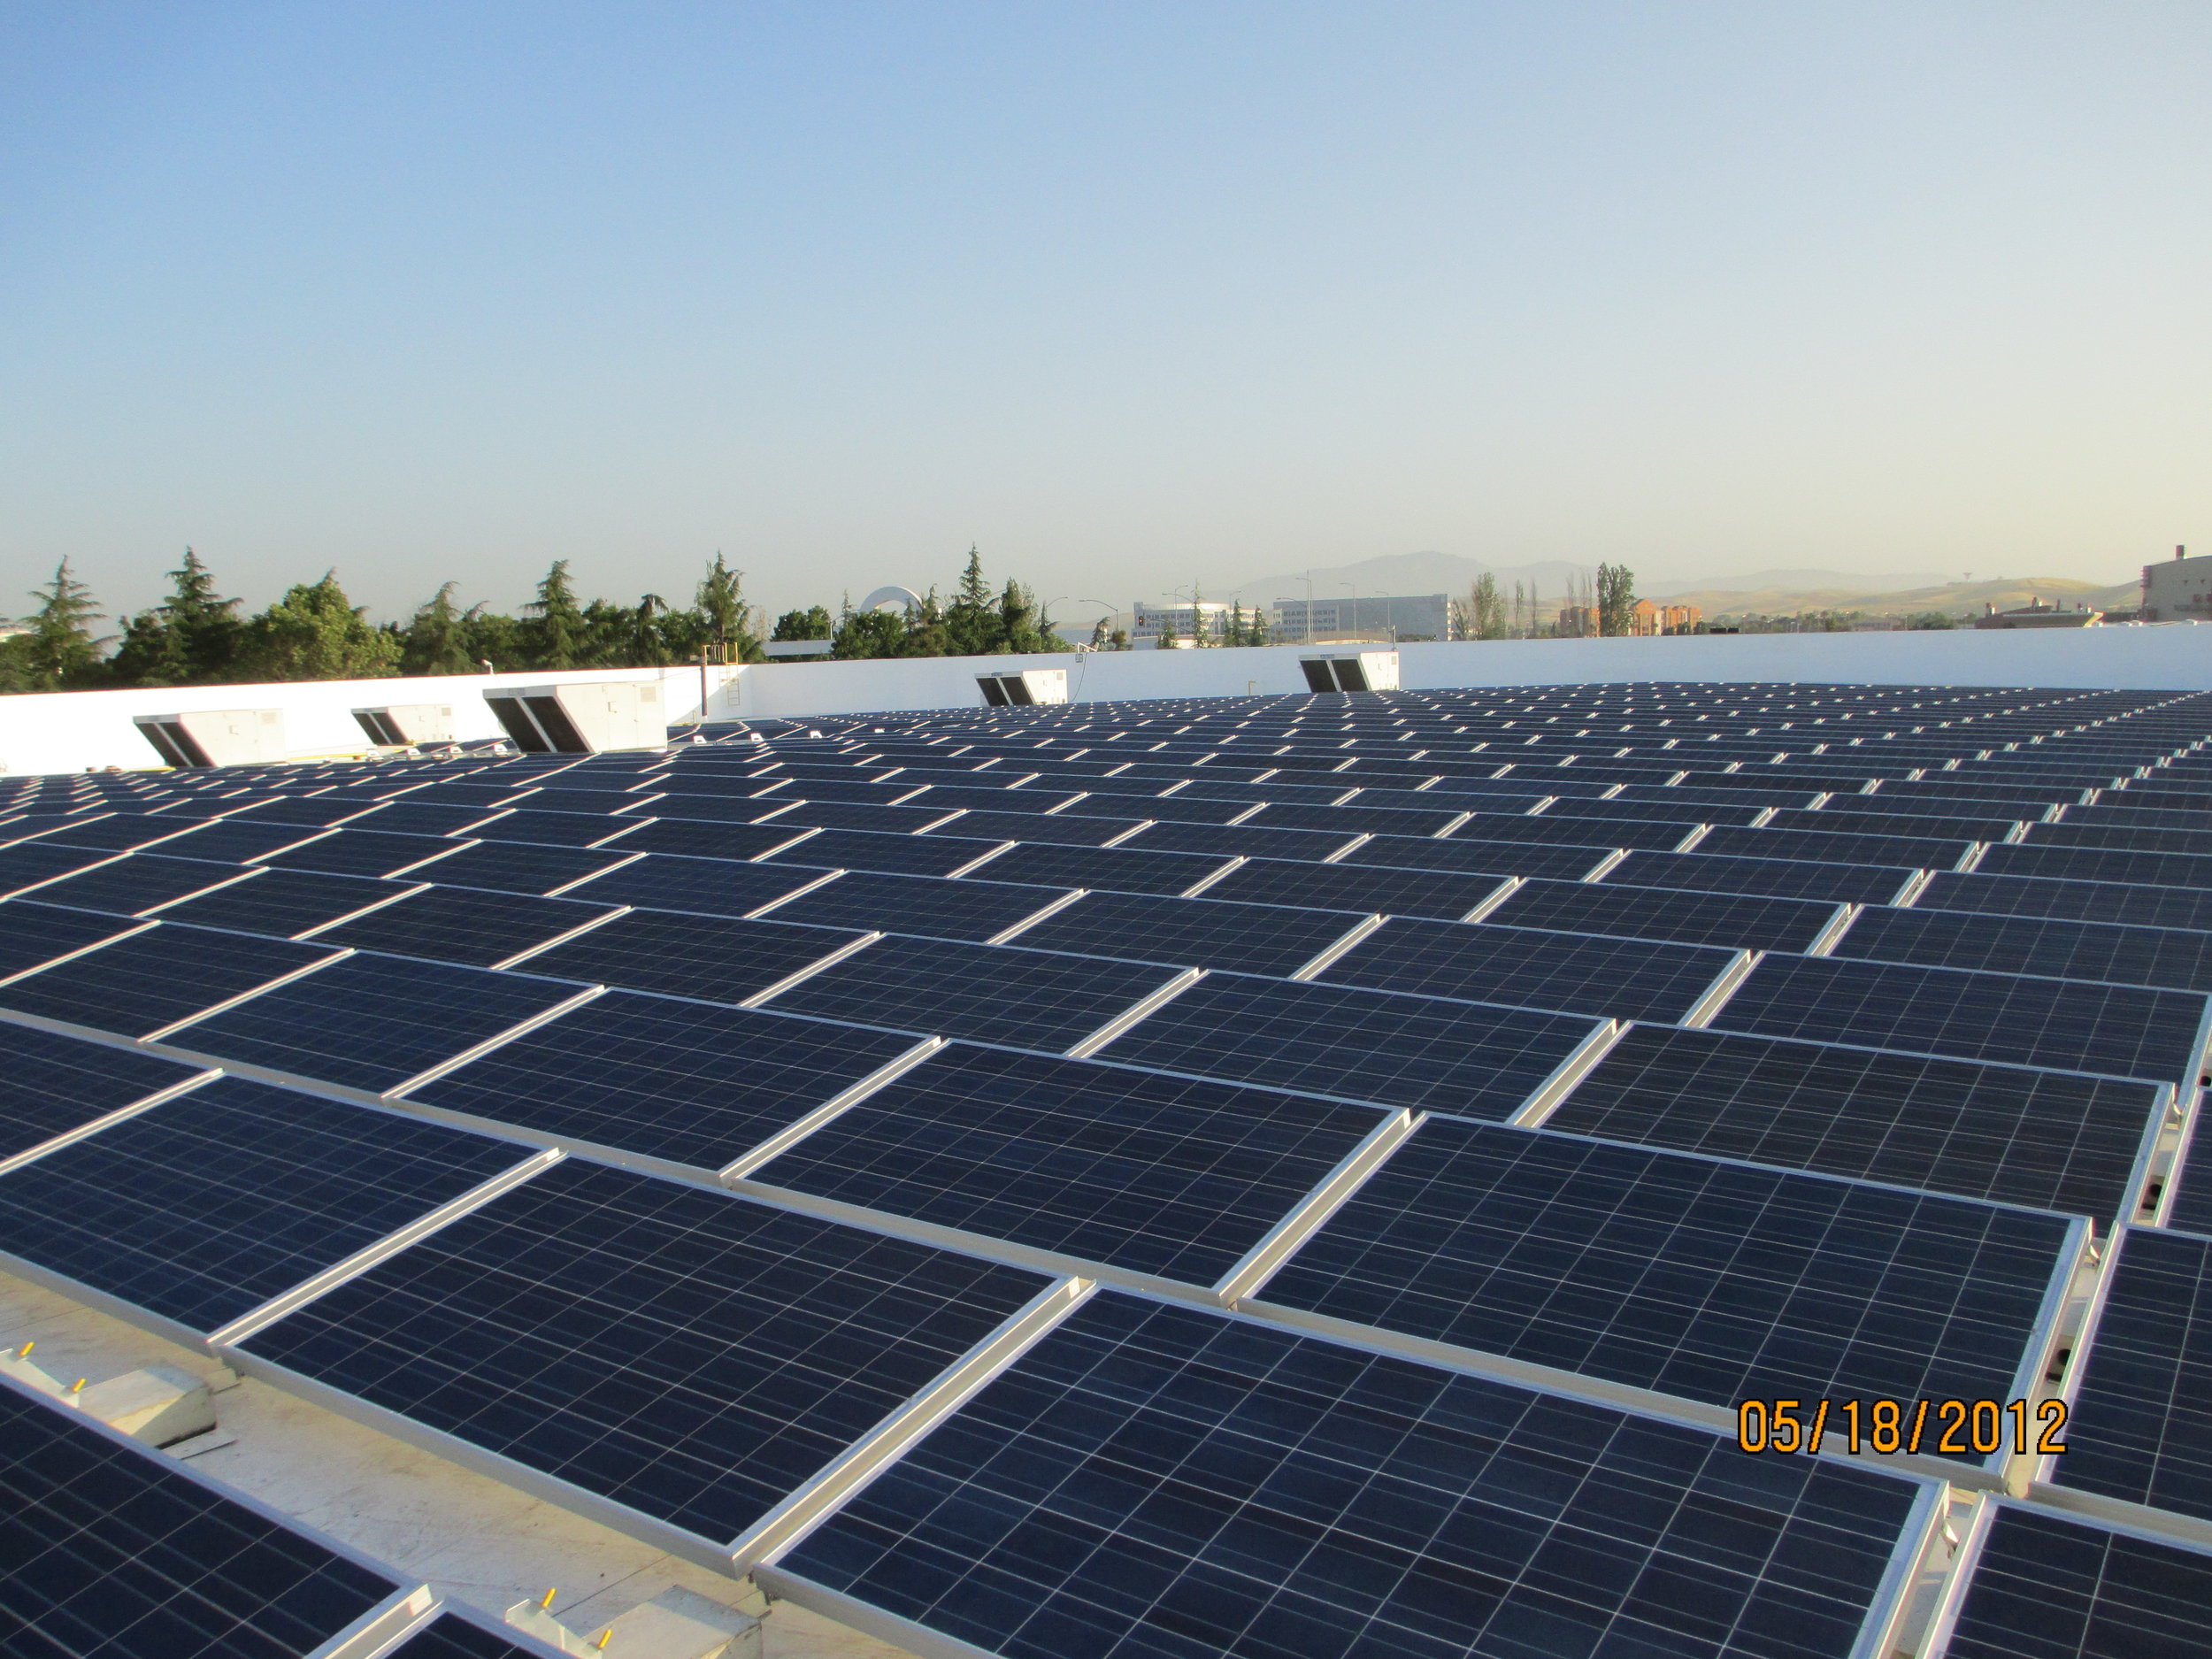 Commercial Solar Install